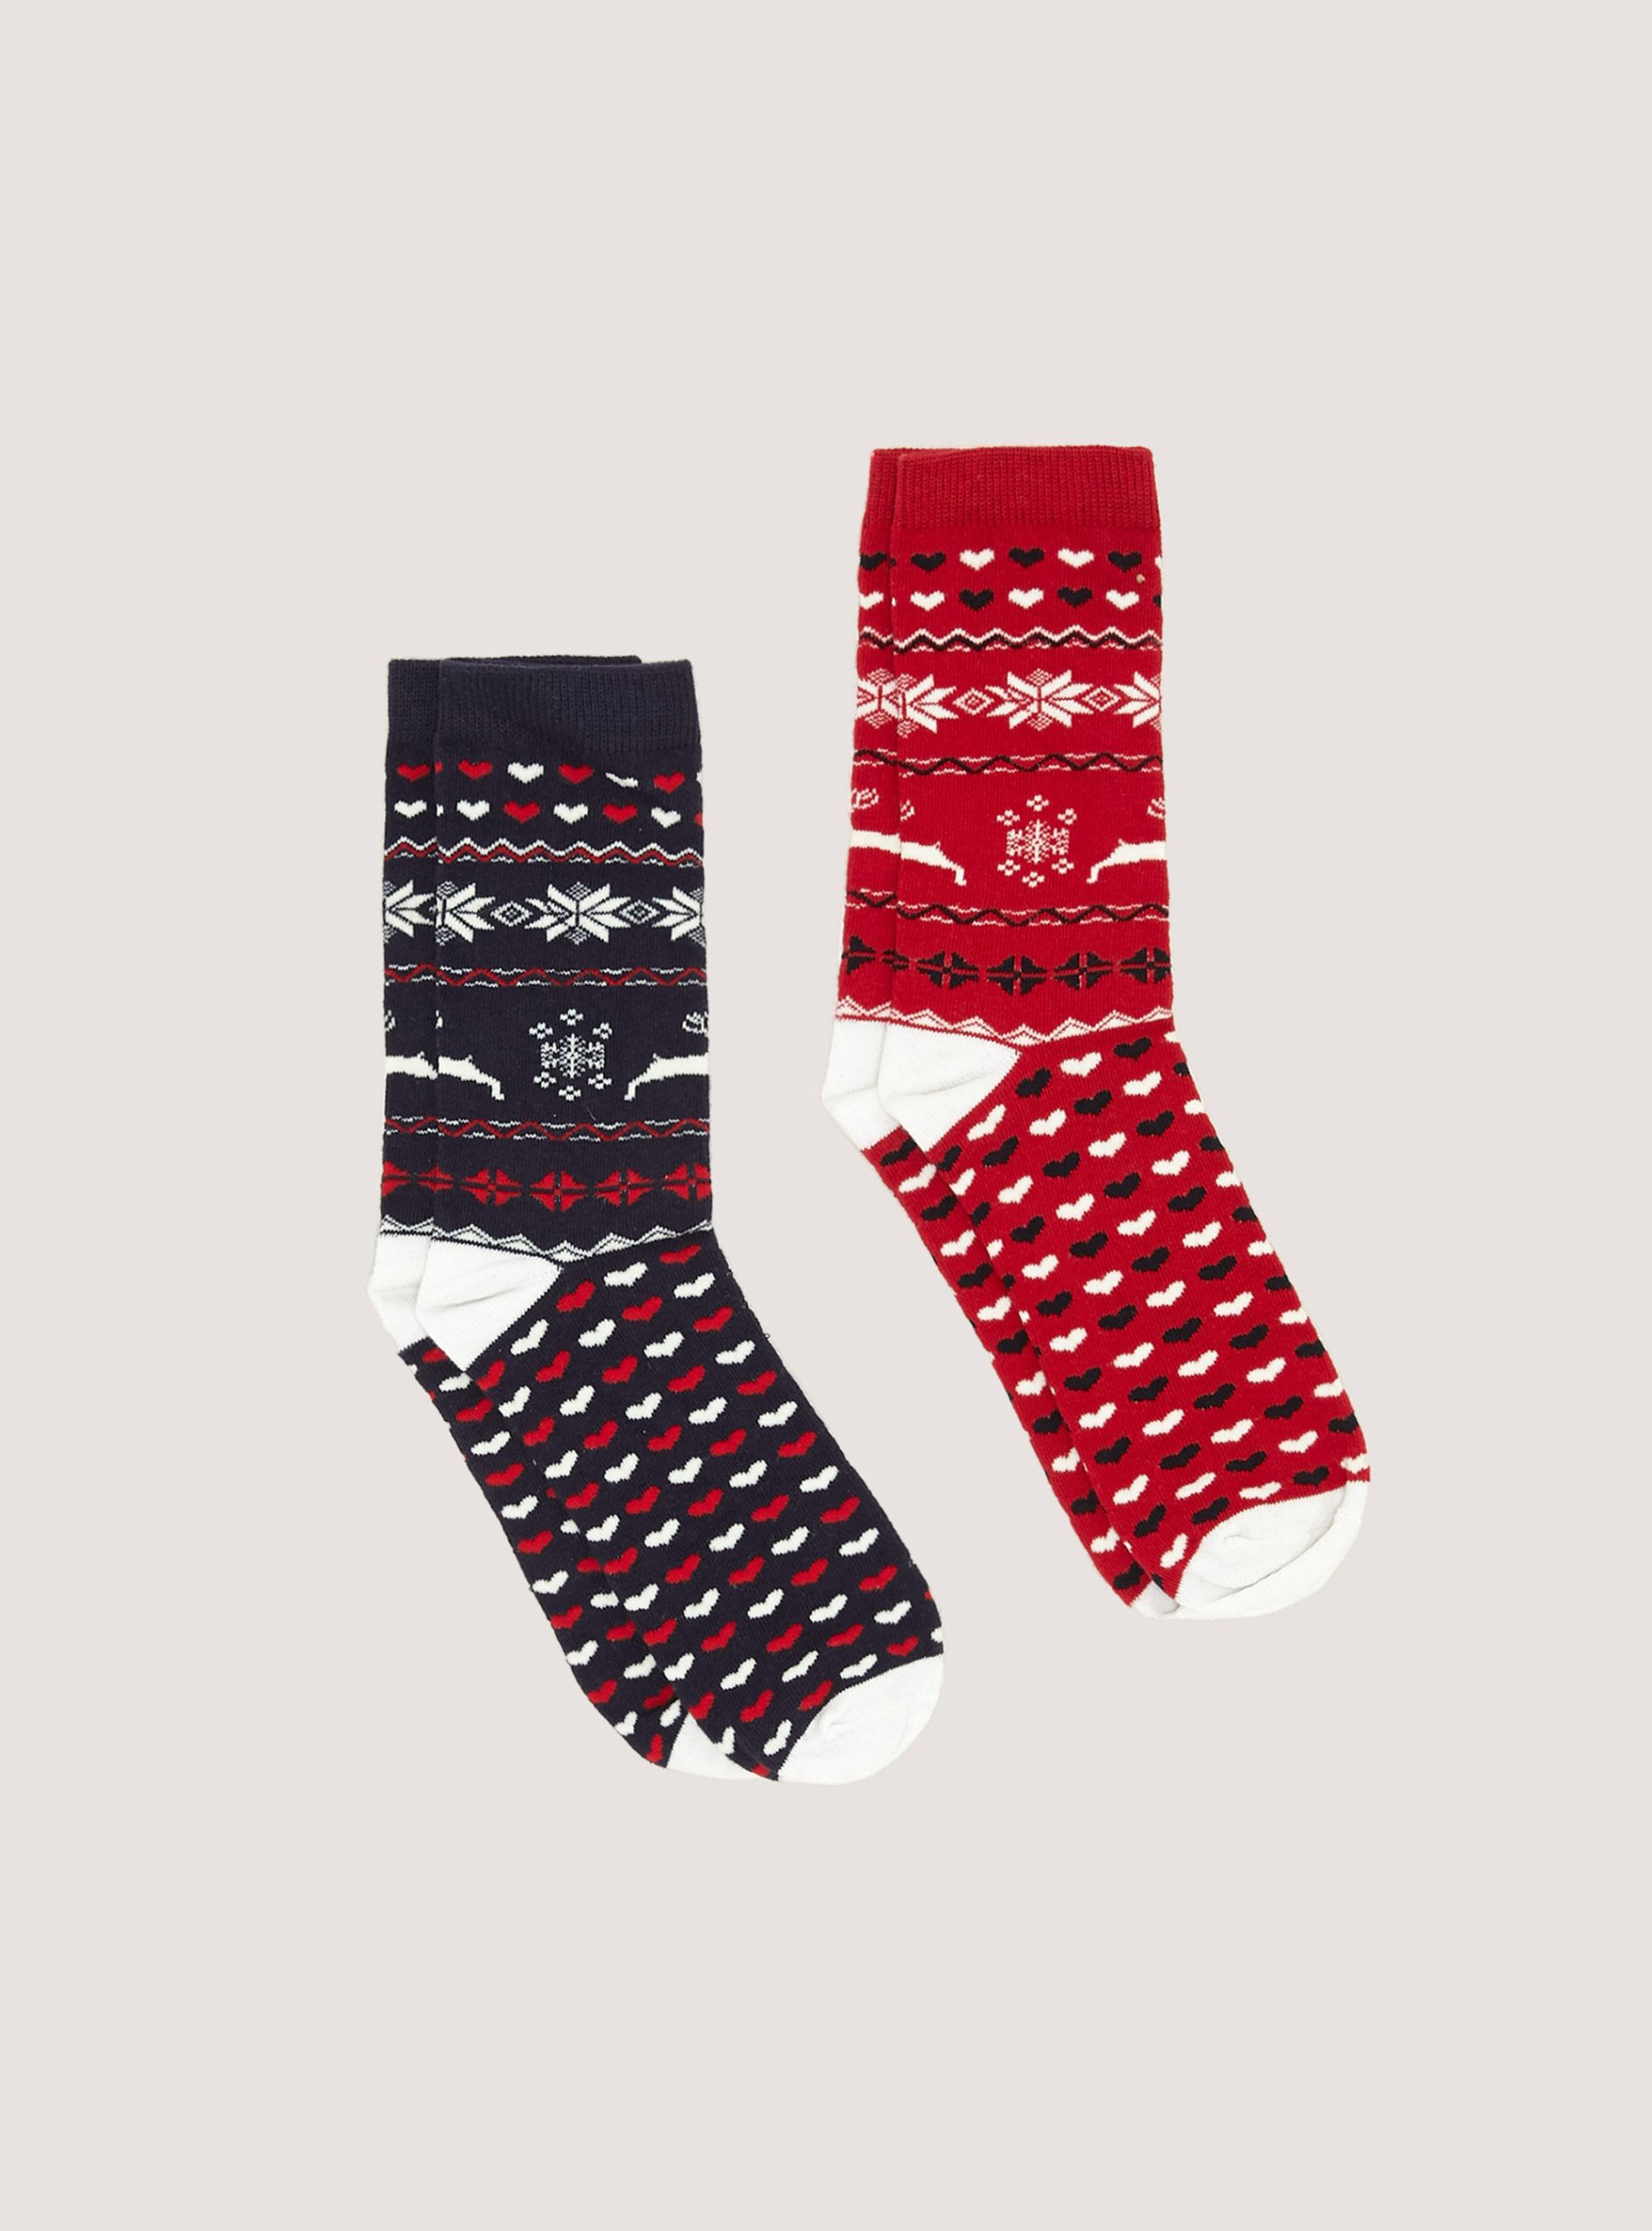 Frauen Alcott Socken Xmas Set Of 2 Pairs Of Christmas Socks Produktstandard – 1